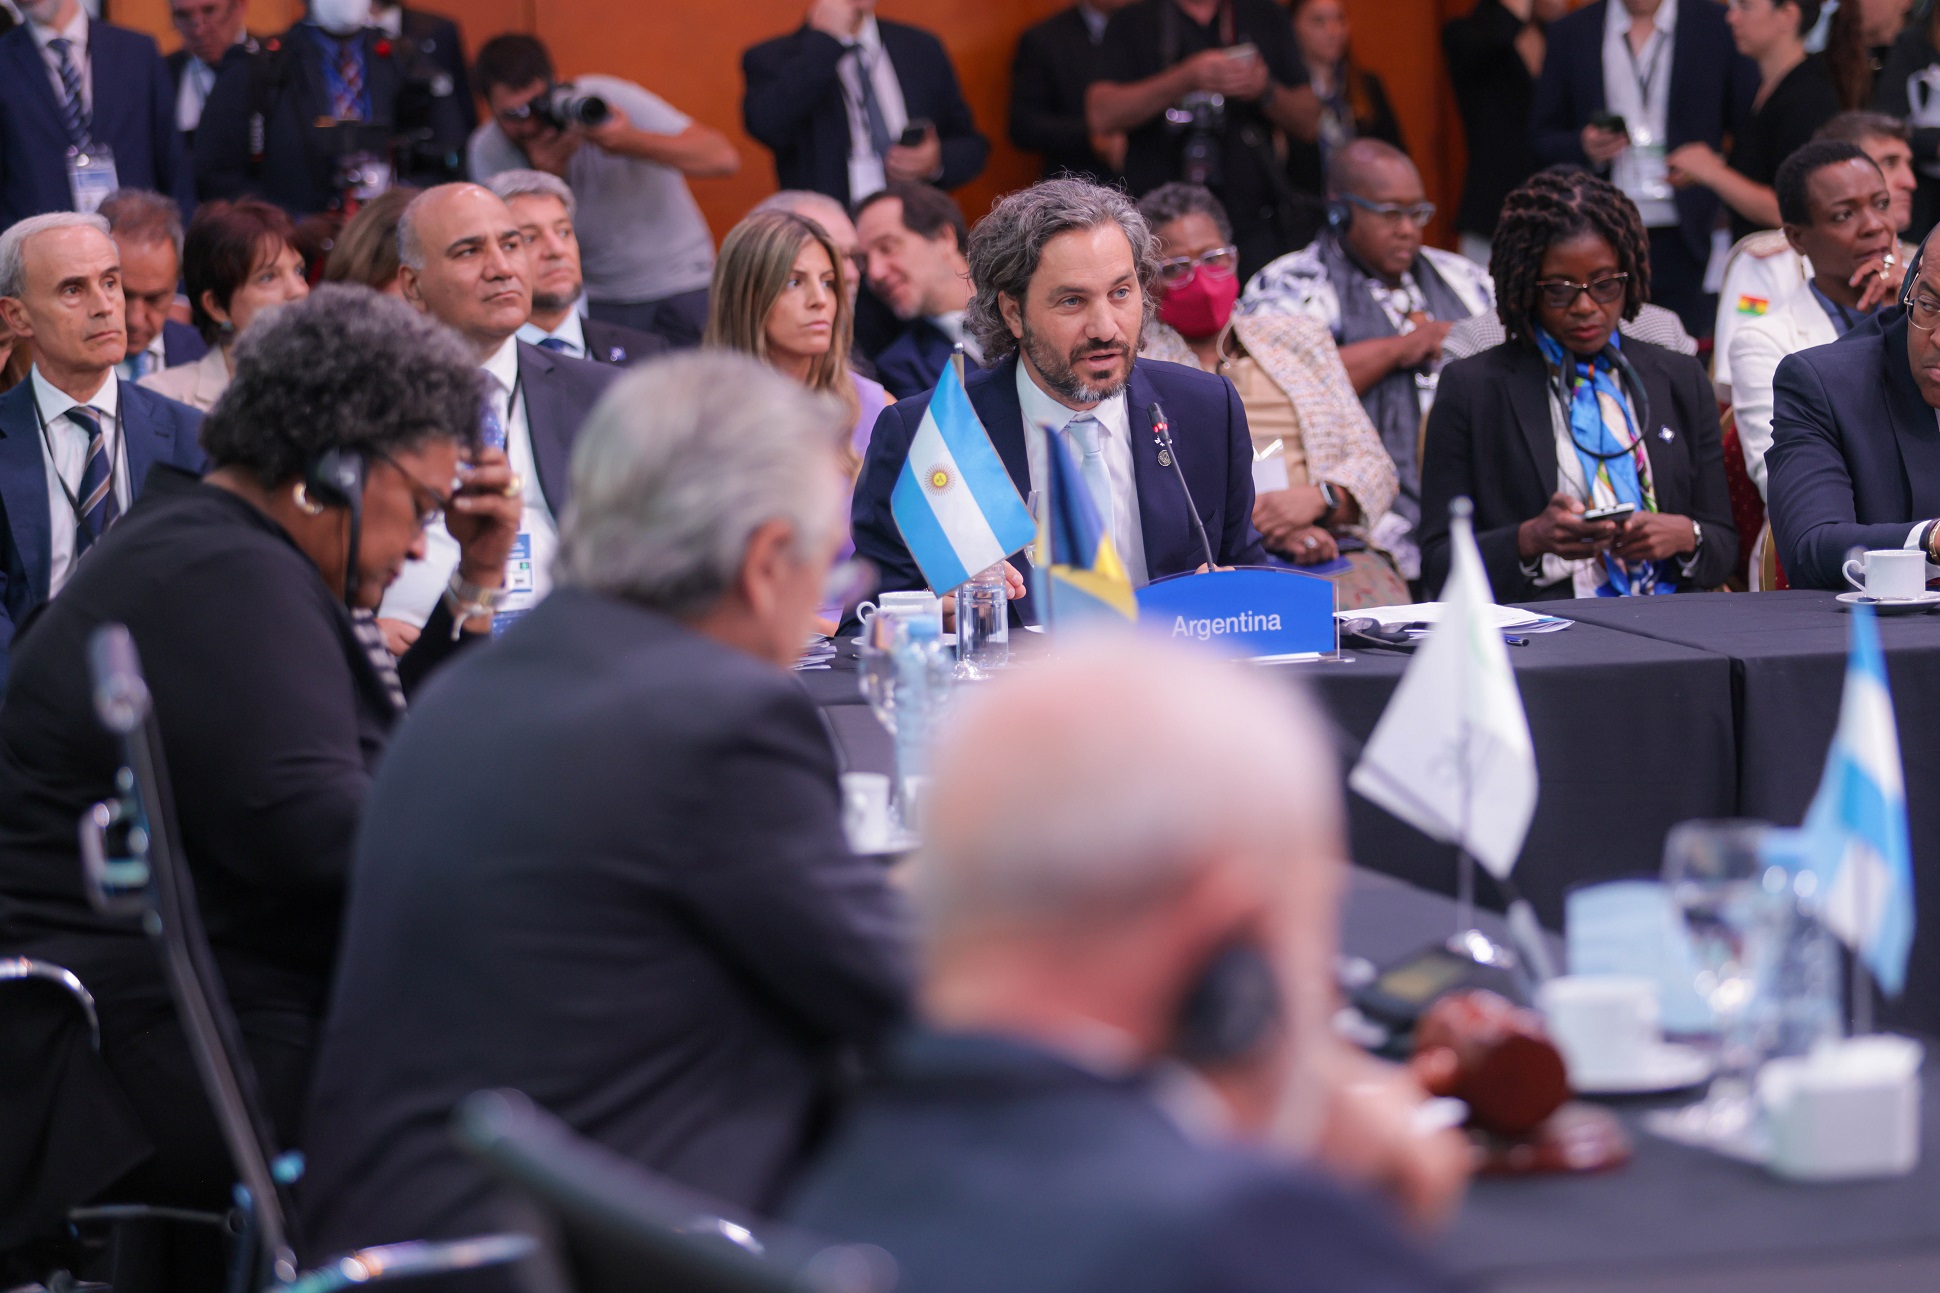 Alberto Fernández: Ha llegado el momento de hacer del Caribe y América Latina una sola región que defienda los mismos intereses para el progreso de nuestros pueblos